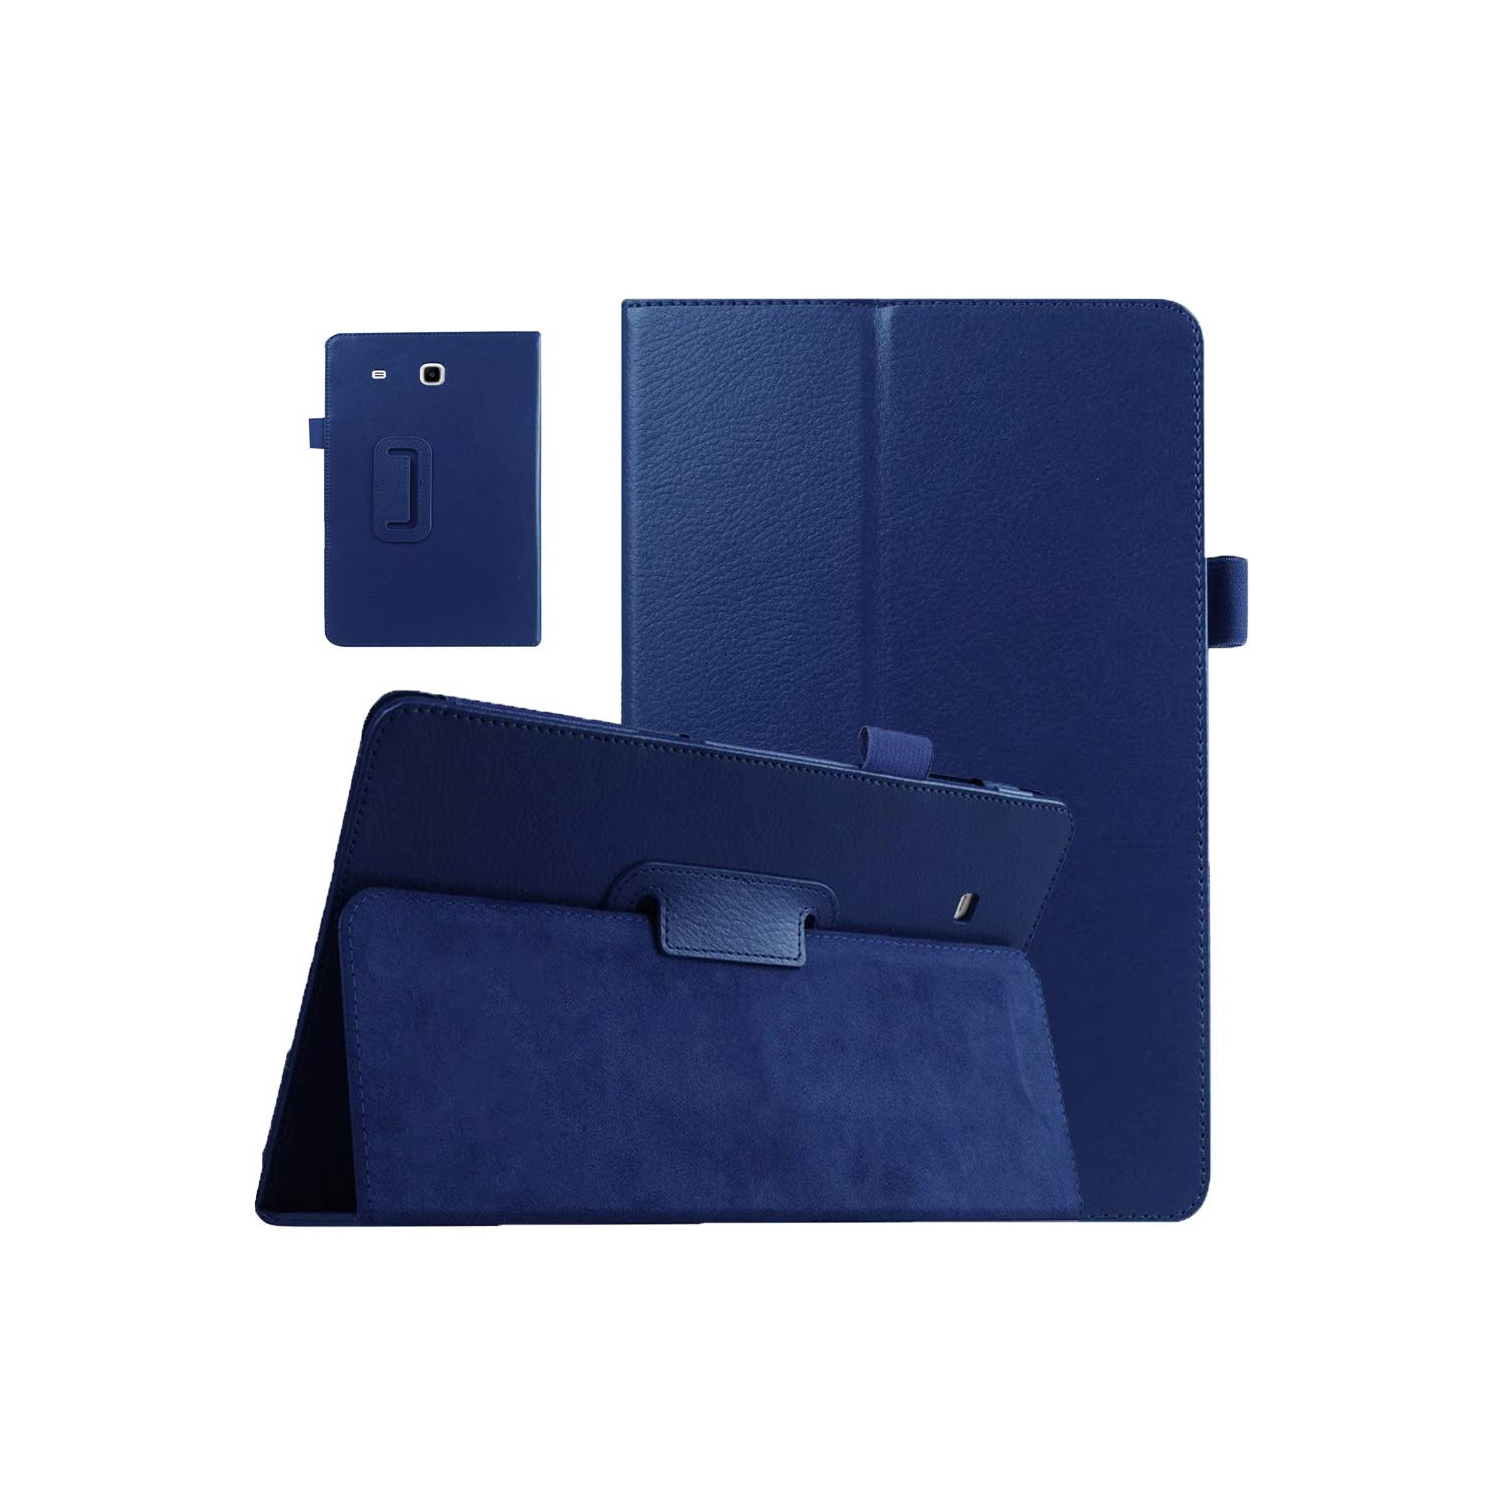 EKVINOR Case for Tab E 9.6 Case Model T560, Slim Leather Folio Case Cover Stand for Samsung Galaxy Tab E 9.6 Inch 2015 Relea